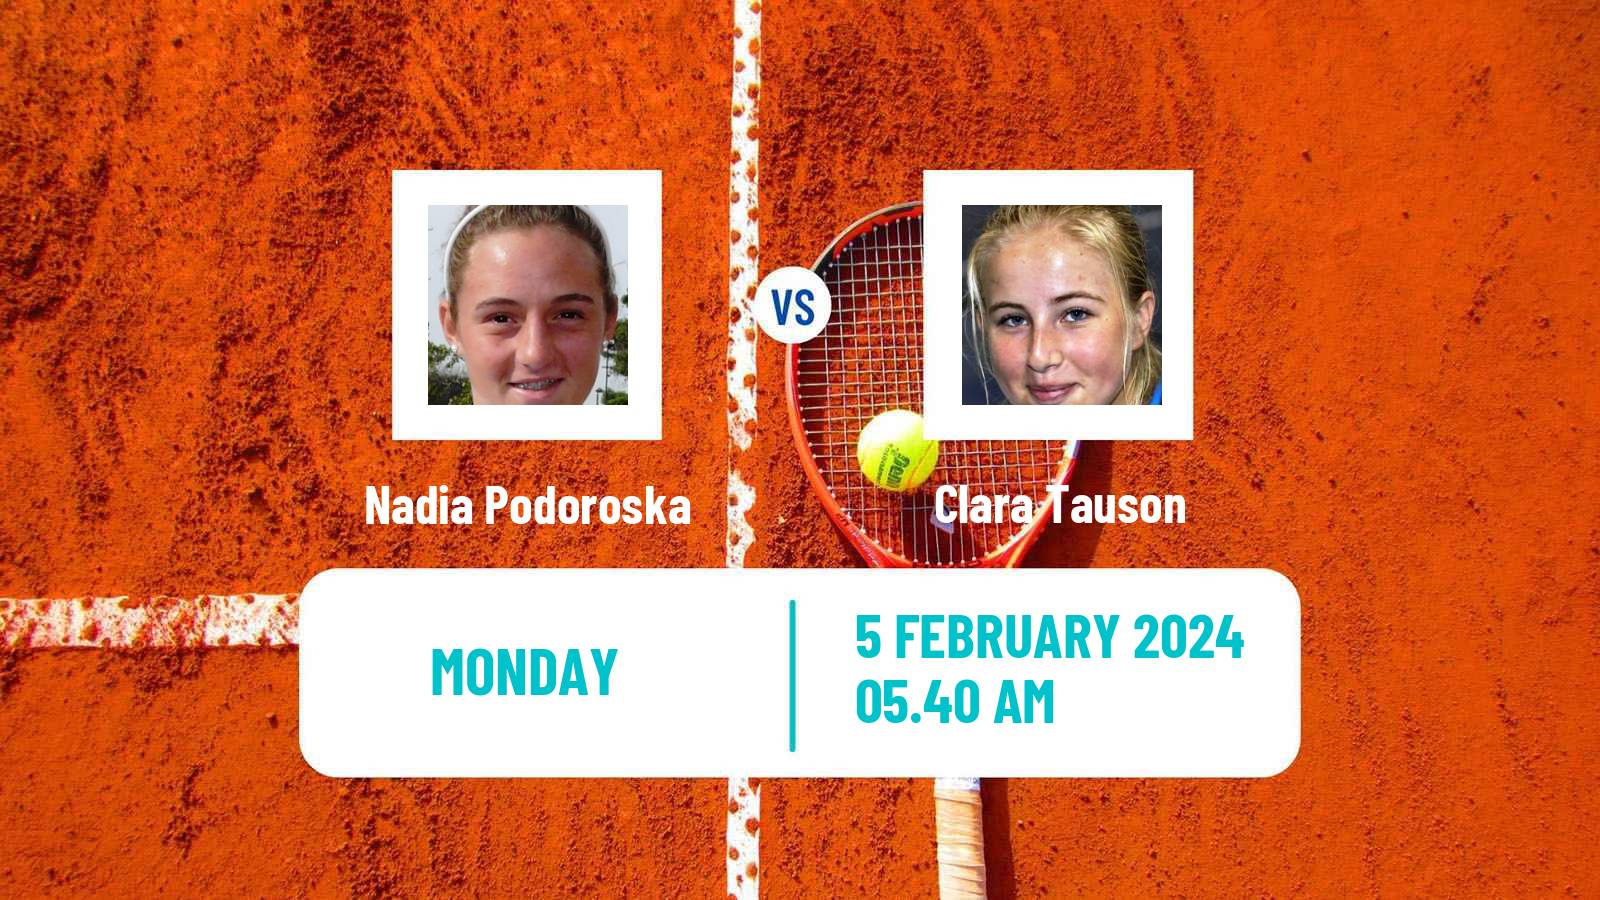 Tennis WTA Cluj Napoca Nadia Podoroska - Clara Tauson